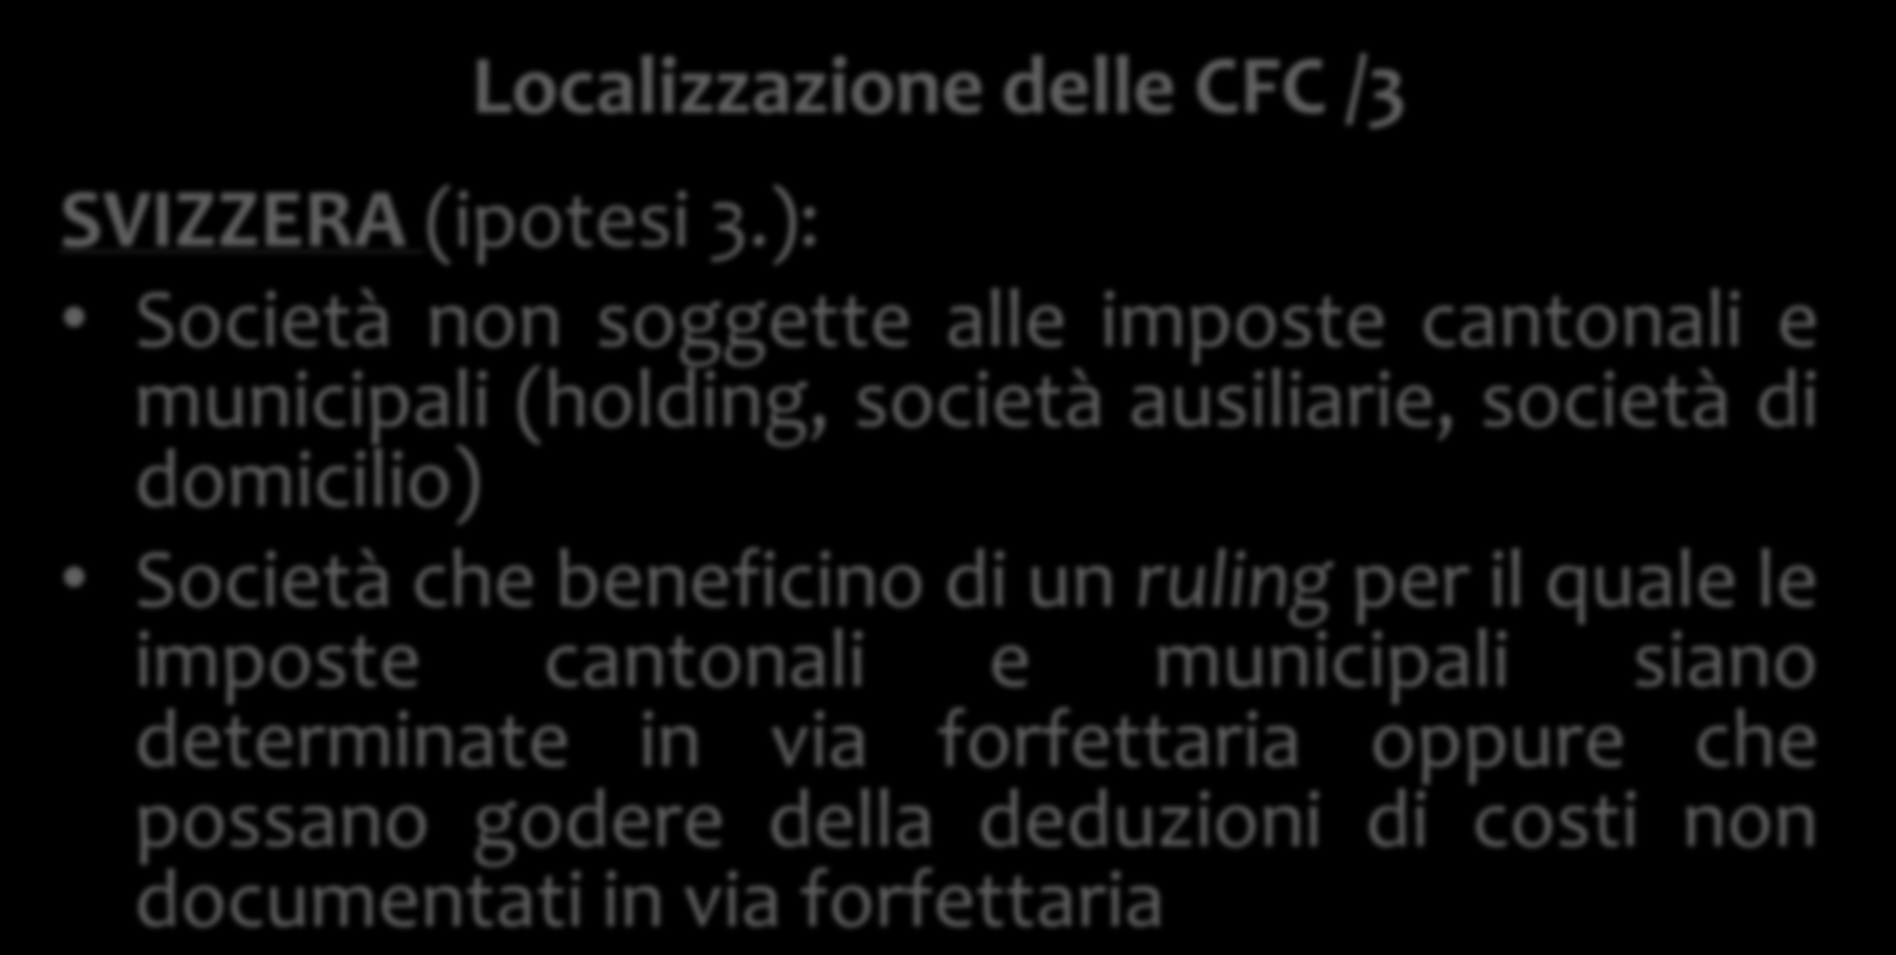 Localizzazione delle CFC /3 SVIZZERA (ipotesi 3.